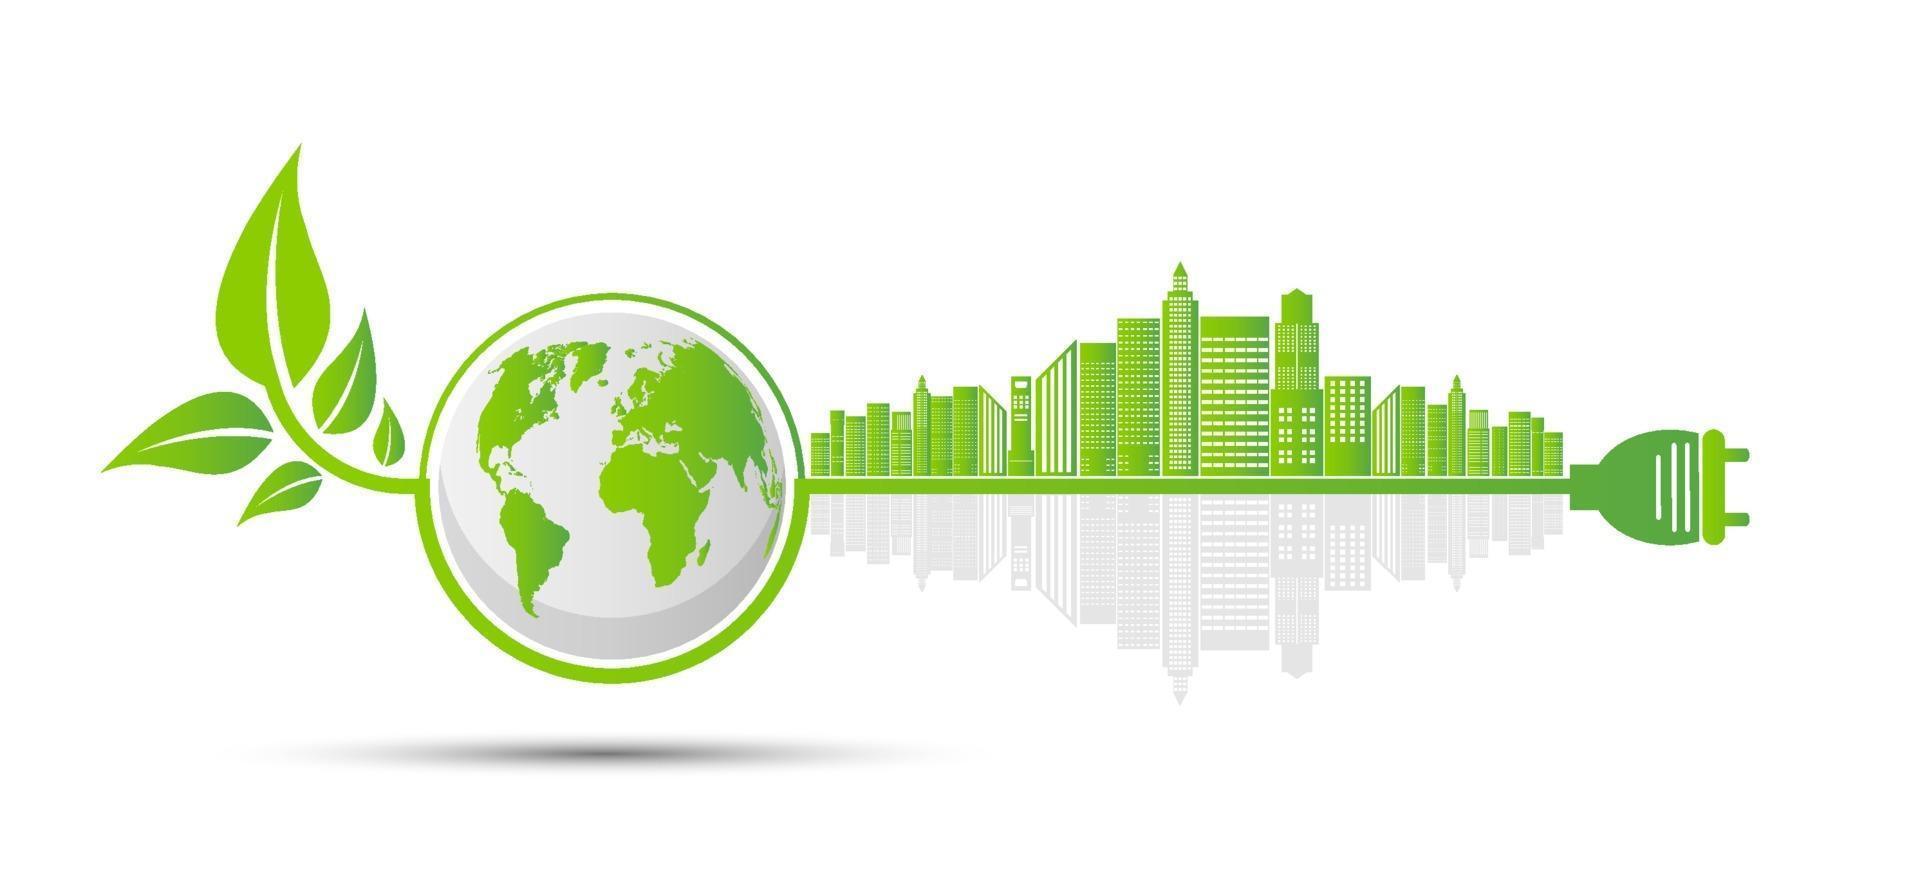 ekologi och miljöbegrepp, jordsymbol med gröna blad runt städer hjälper världen med miljövänliga idéer vektor